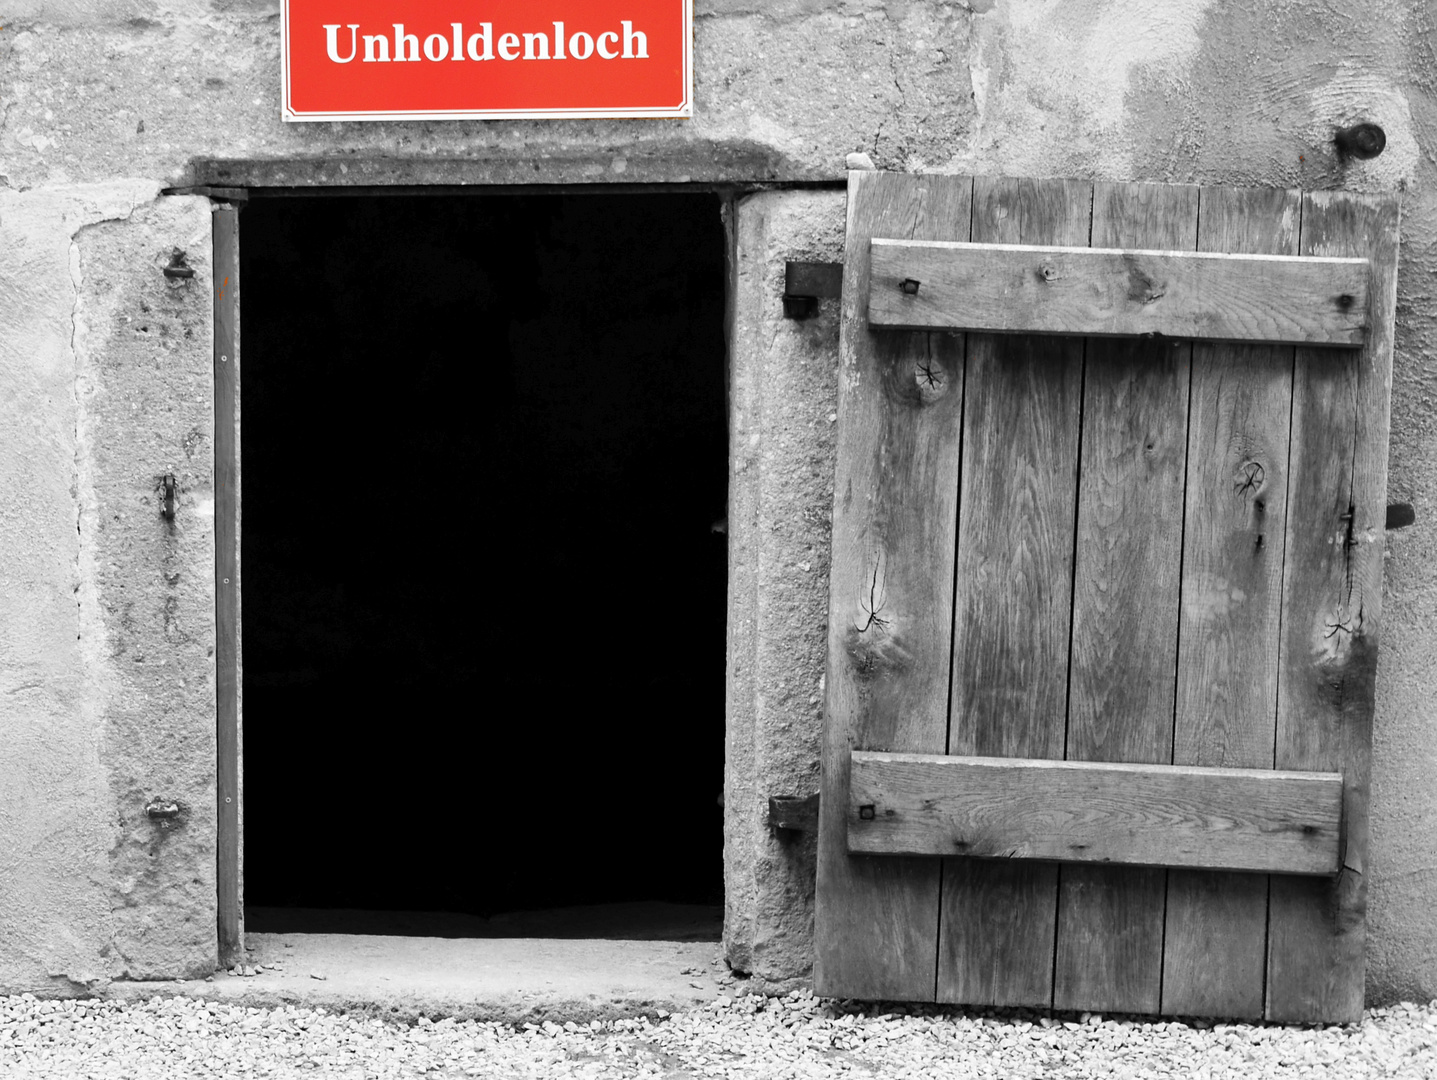 Unholdenloch Foto & Bild  architektur, fenster & türen, schlösser & burgen  Bilder auf fotocommunity